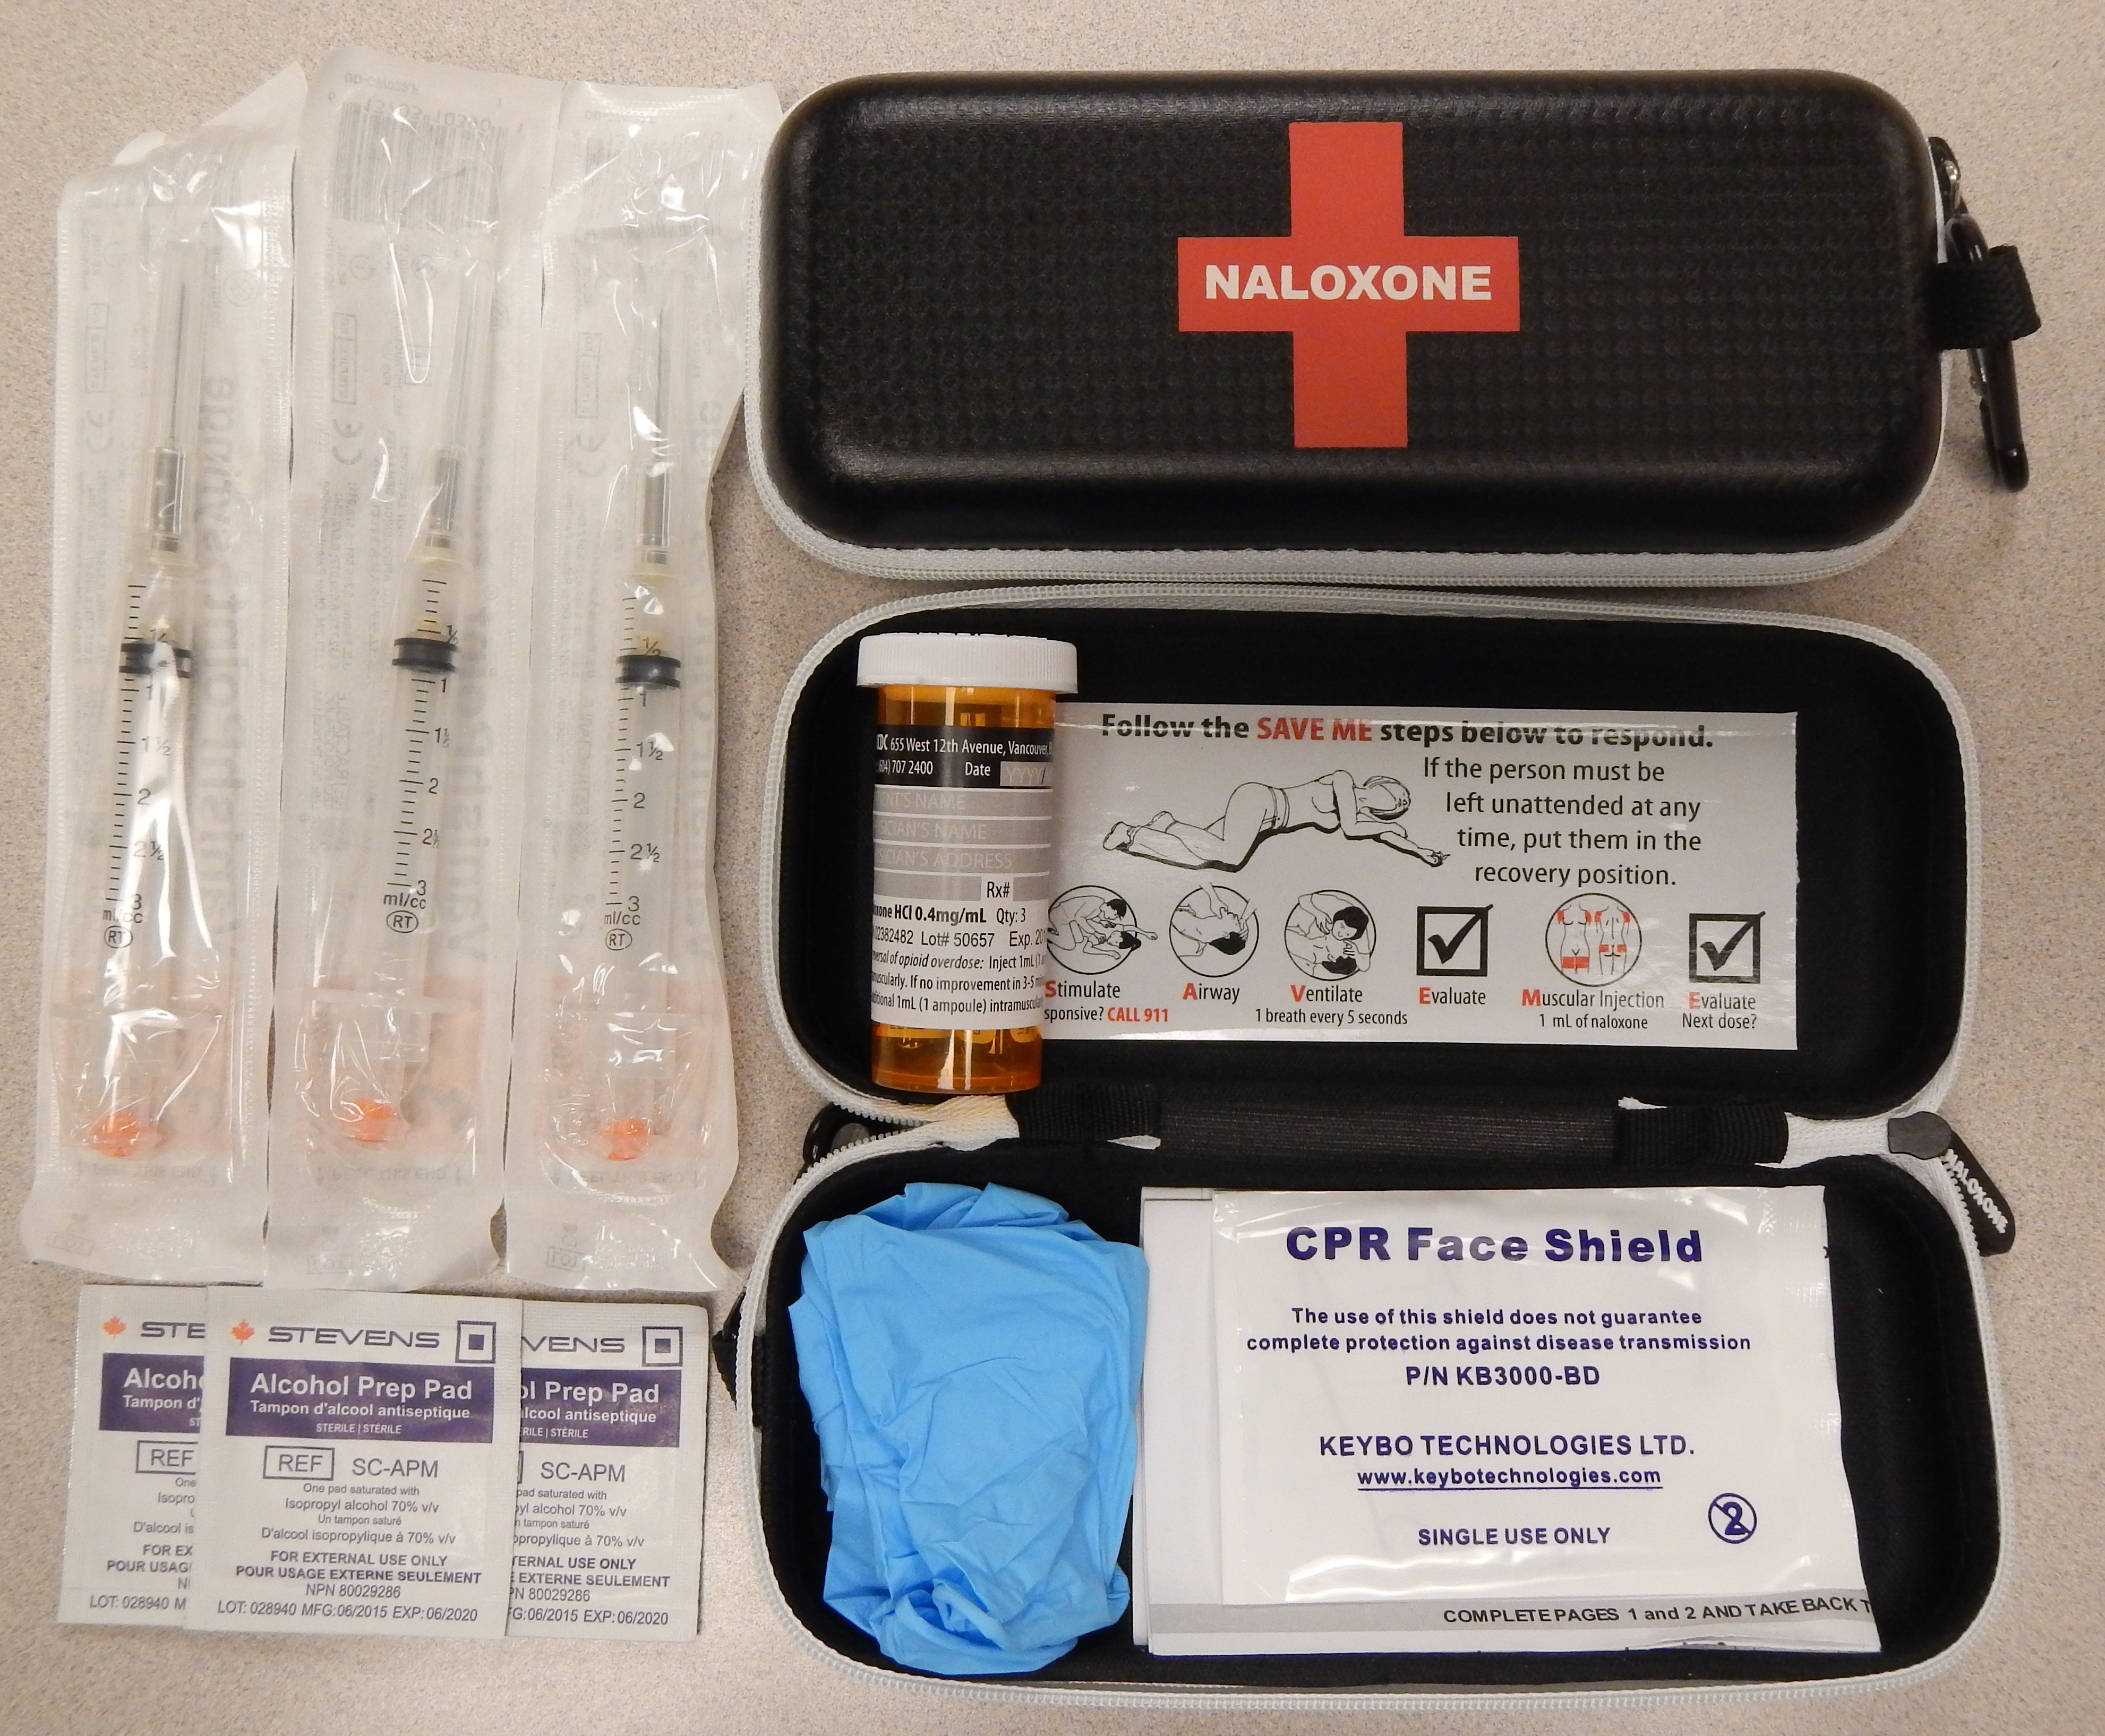 A naloxone kit, containing the naloxone itself plus needles and syringes, wipes, and instructions